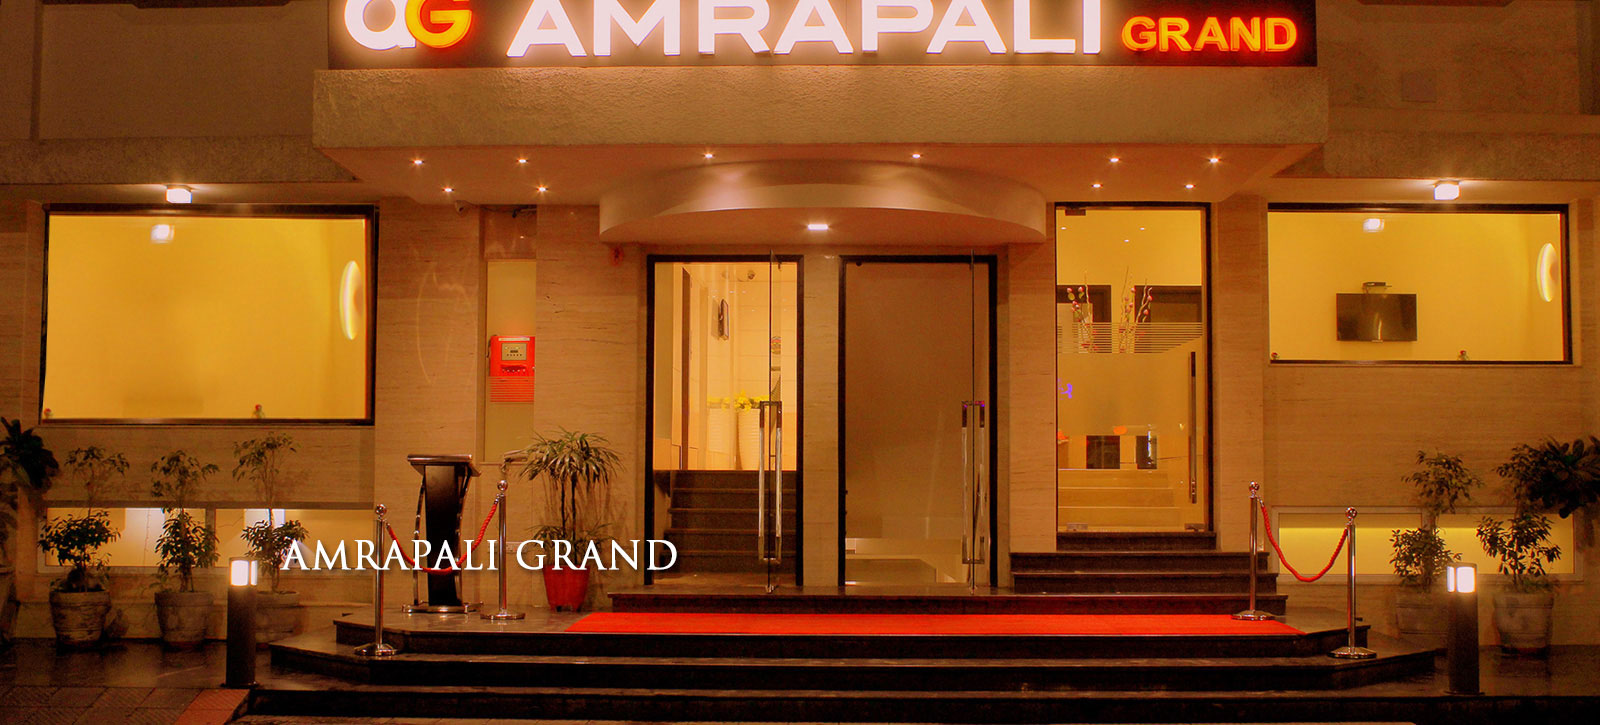 Amrapali Hotel near Karol Bagh